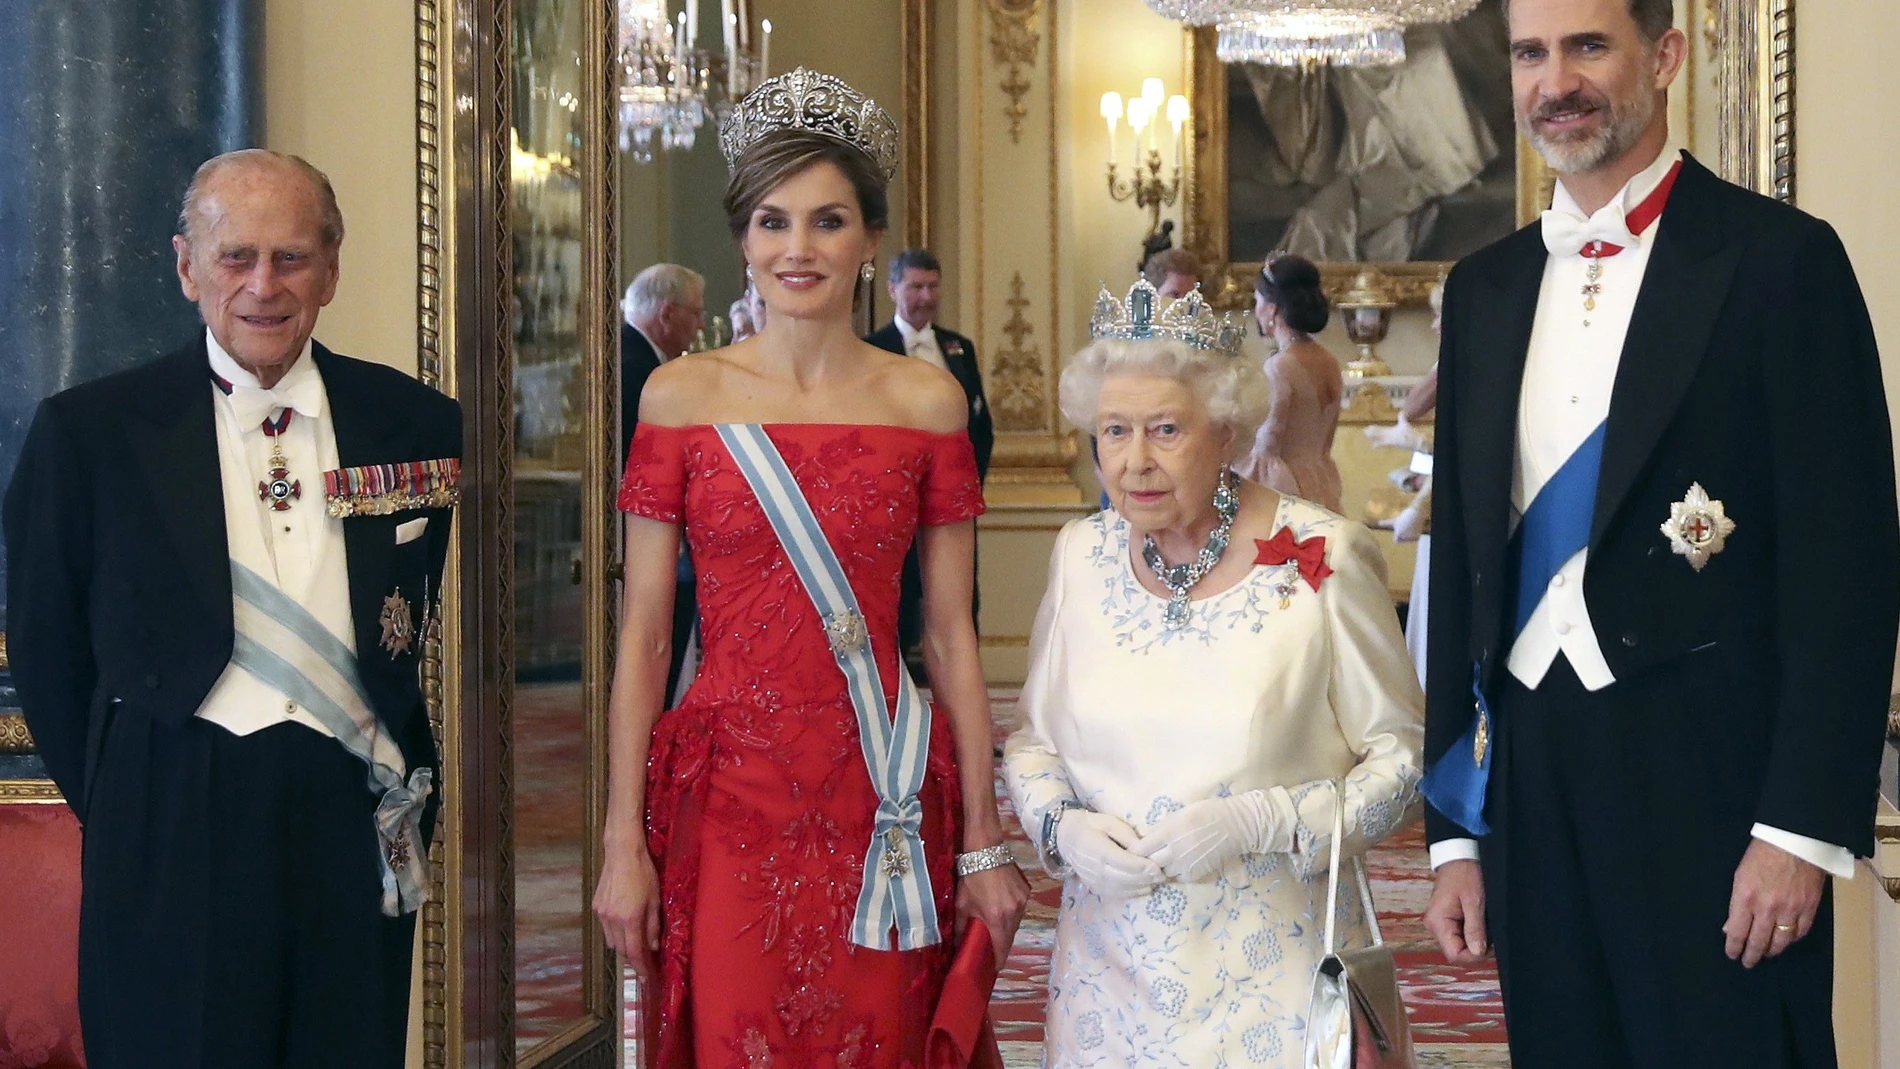 GRAF727. LONDRES, 09/04/2021.- Fotografía de archivo (Londres, 12/07/2017) del duque de Edimburgo (i), junto a la reina Isabel II y los reyes de España, Felipe VI y Letizia, a su llegada a la cena de gala ofrecida por la monarca británica con motivo del viaje de Estado de los Reyes españoles al Reino Unido. El duque de Edimburgo, el príncipe Felipe, marido de la reina Isabel II, ha muerto a los 99 años, según anunció la Casa Real británica en un comunicado. EFE/Ballesteros - SOLO USO EDITORIAL/SOLO DISPONIBLE PARA ILUSTRAR LA NOTICIA QUE ACOMPAÑA / UN SOLO USO (CRÉDITO OBLIGATORIO) - (Recursos de archivo en www.lafototeca.com. URL http://bit.ly/1mdW7Q6)